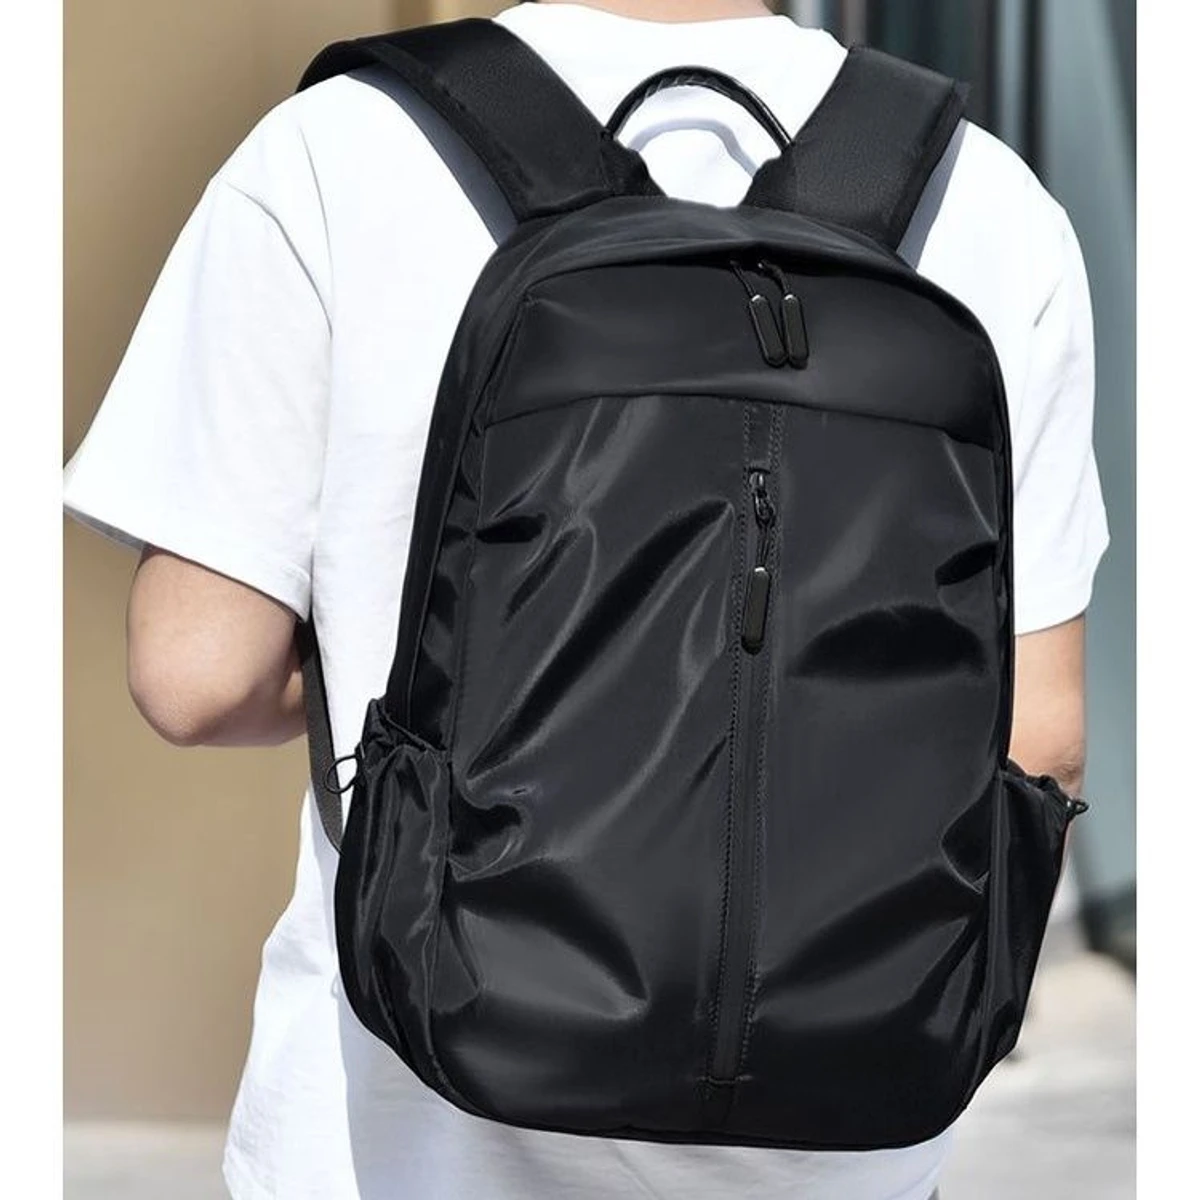 Waterproof Laptop Backpack (Free money Bag)